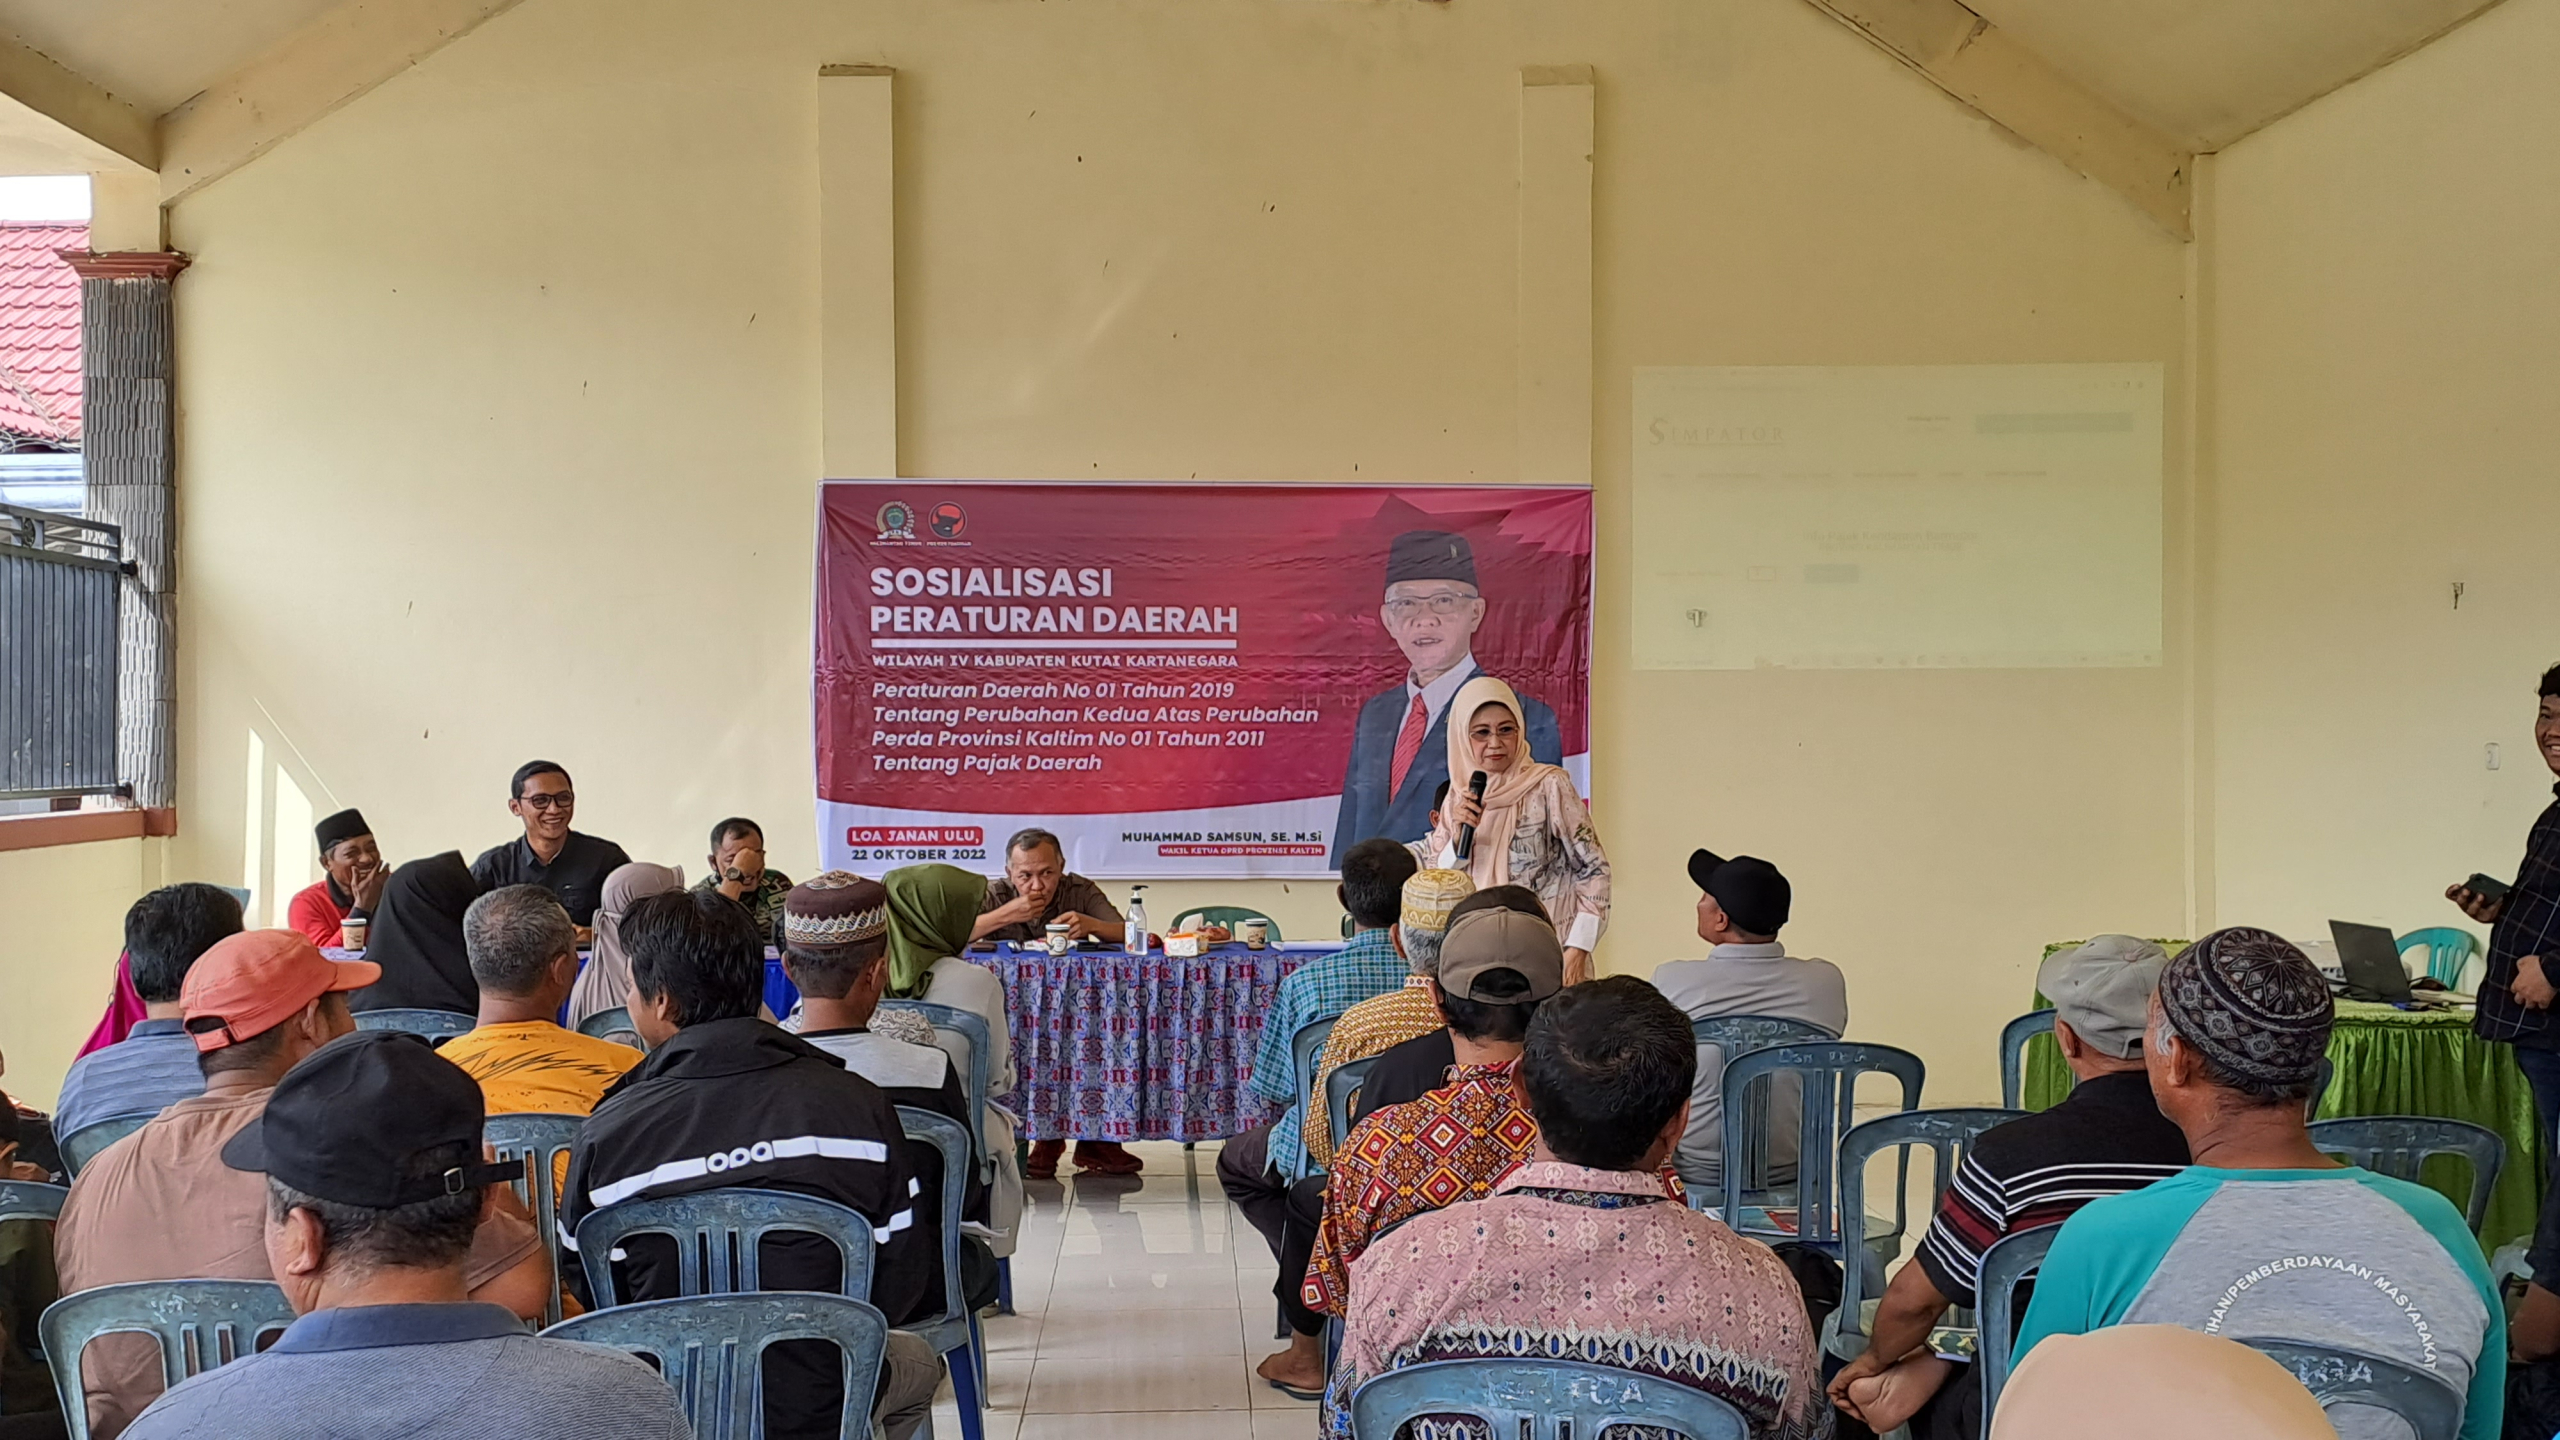 Sosialisasi Peraturan Daerah Provinsi Kalimantan Timur No 1 Tahun 2019